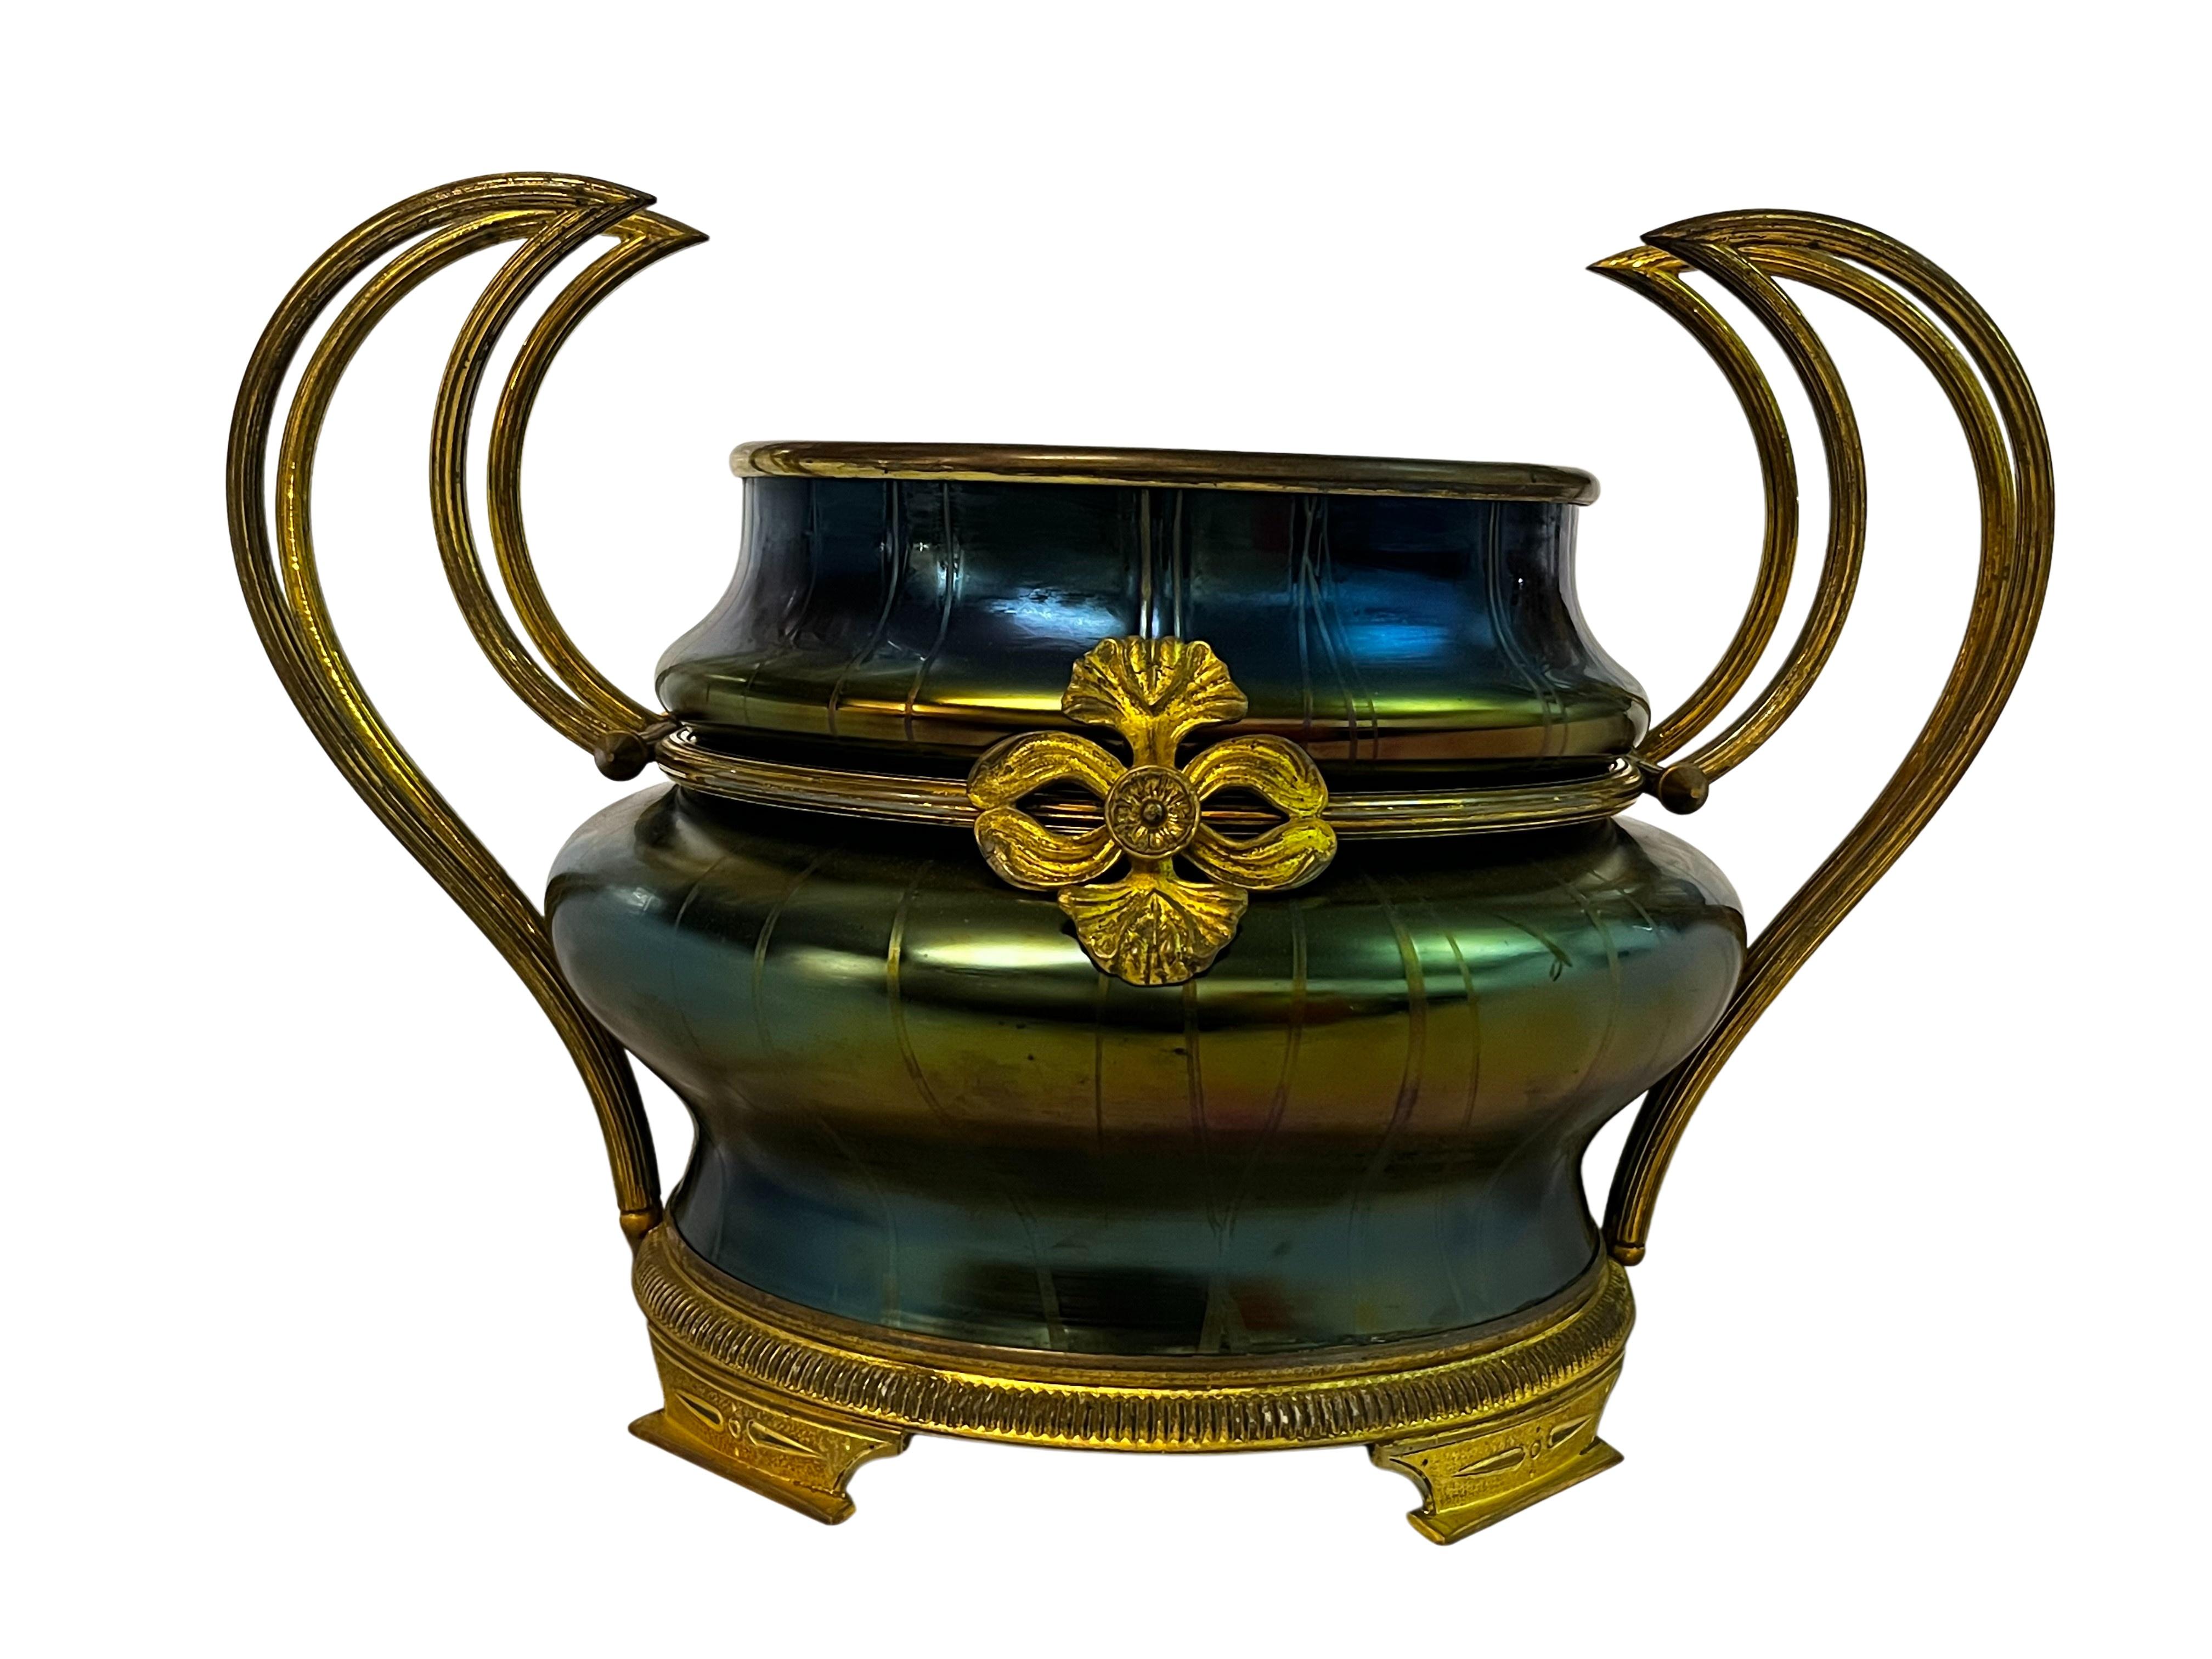 Huge magnificent bowl vase, Lötz Loetz Glass Jugendstil Art Nouveau 1900 Bohemia For Sale 4